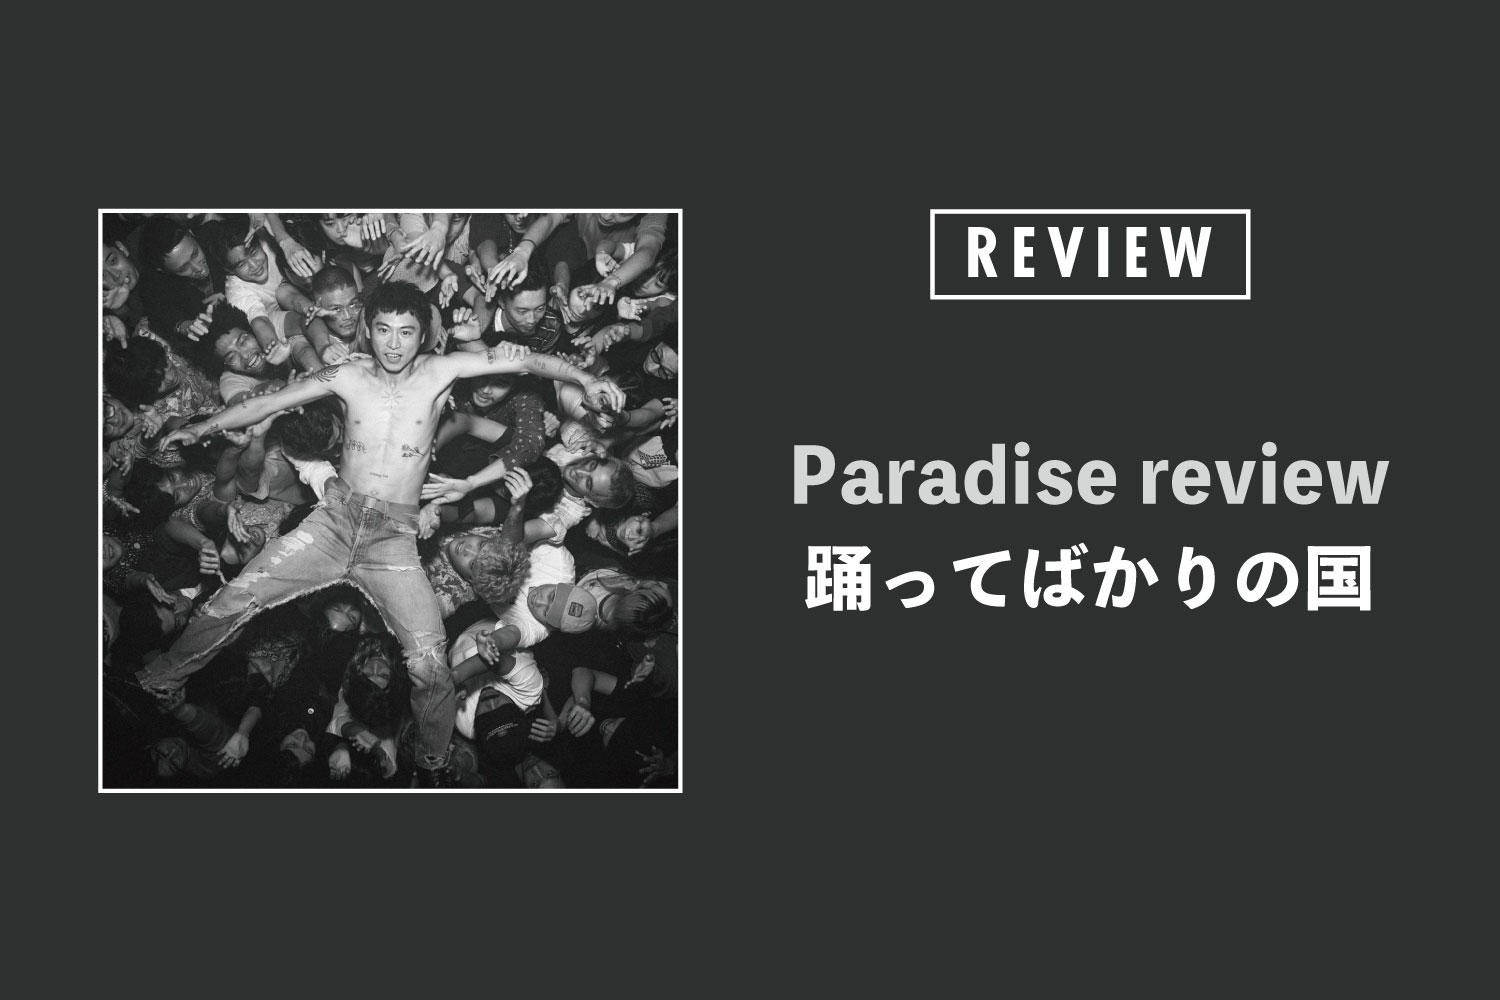 踊ってばかりの国「Paradise review」──音楽の羽はここまで飛べる。リアルから生まれた祝福の歌唱集